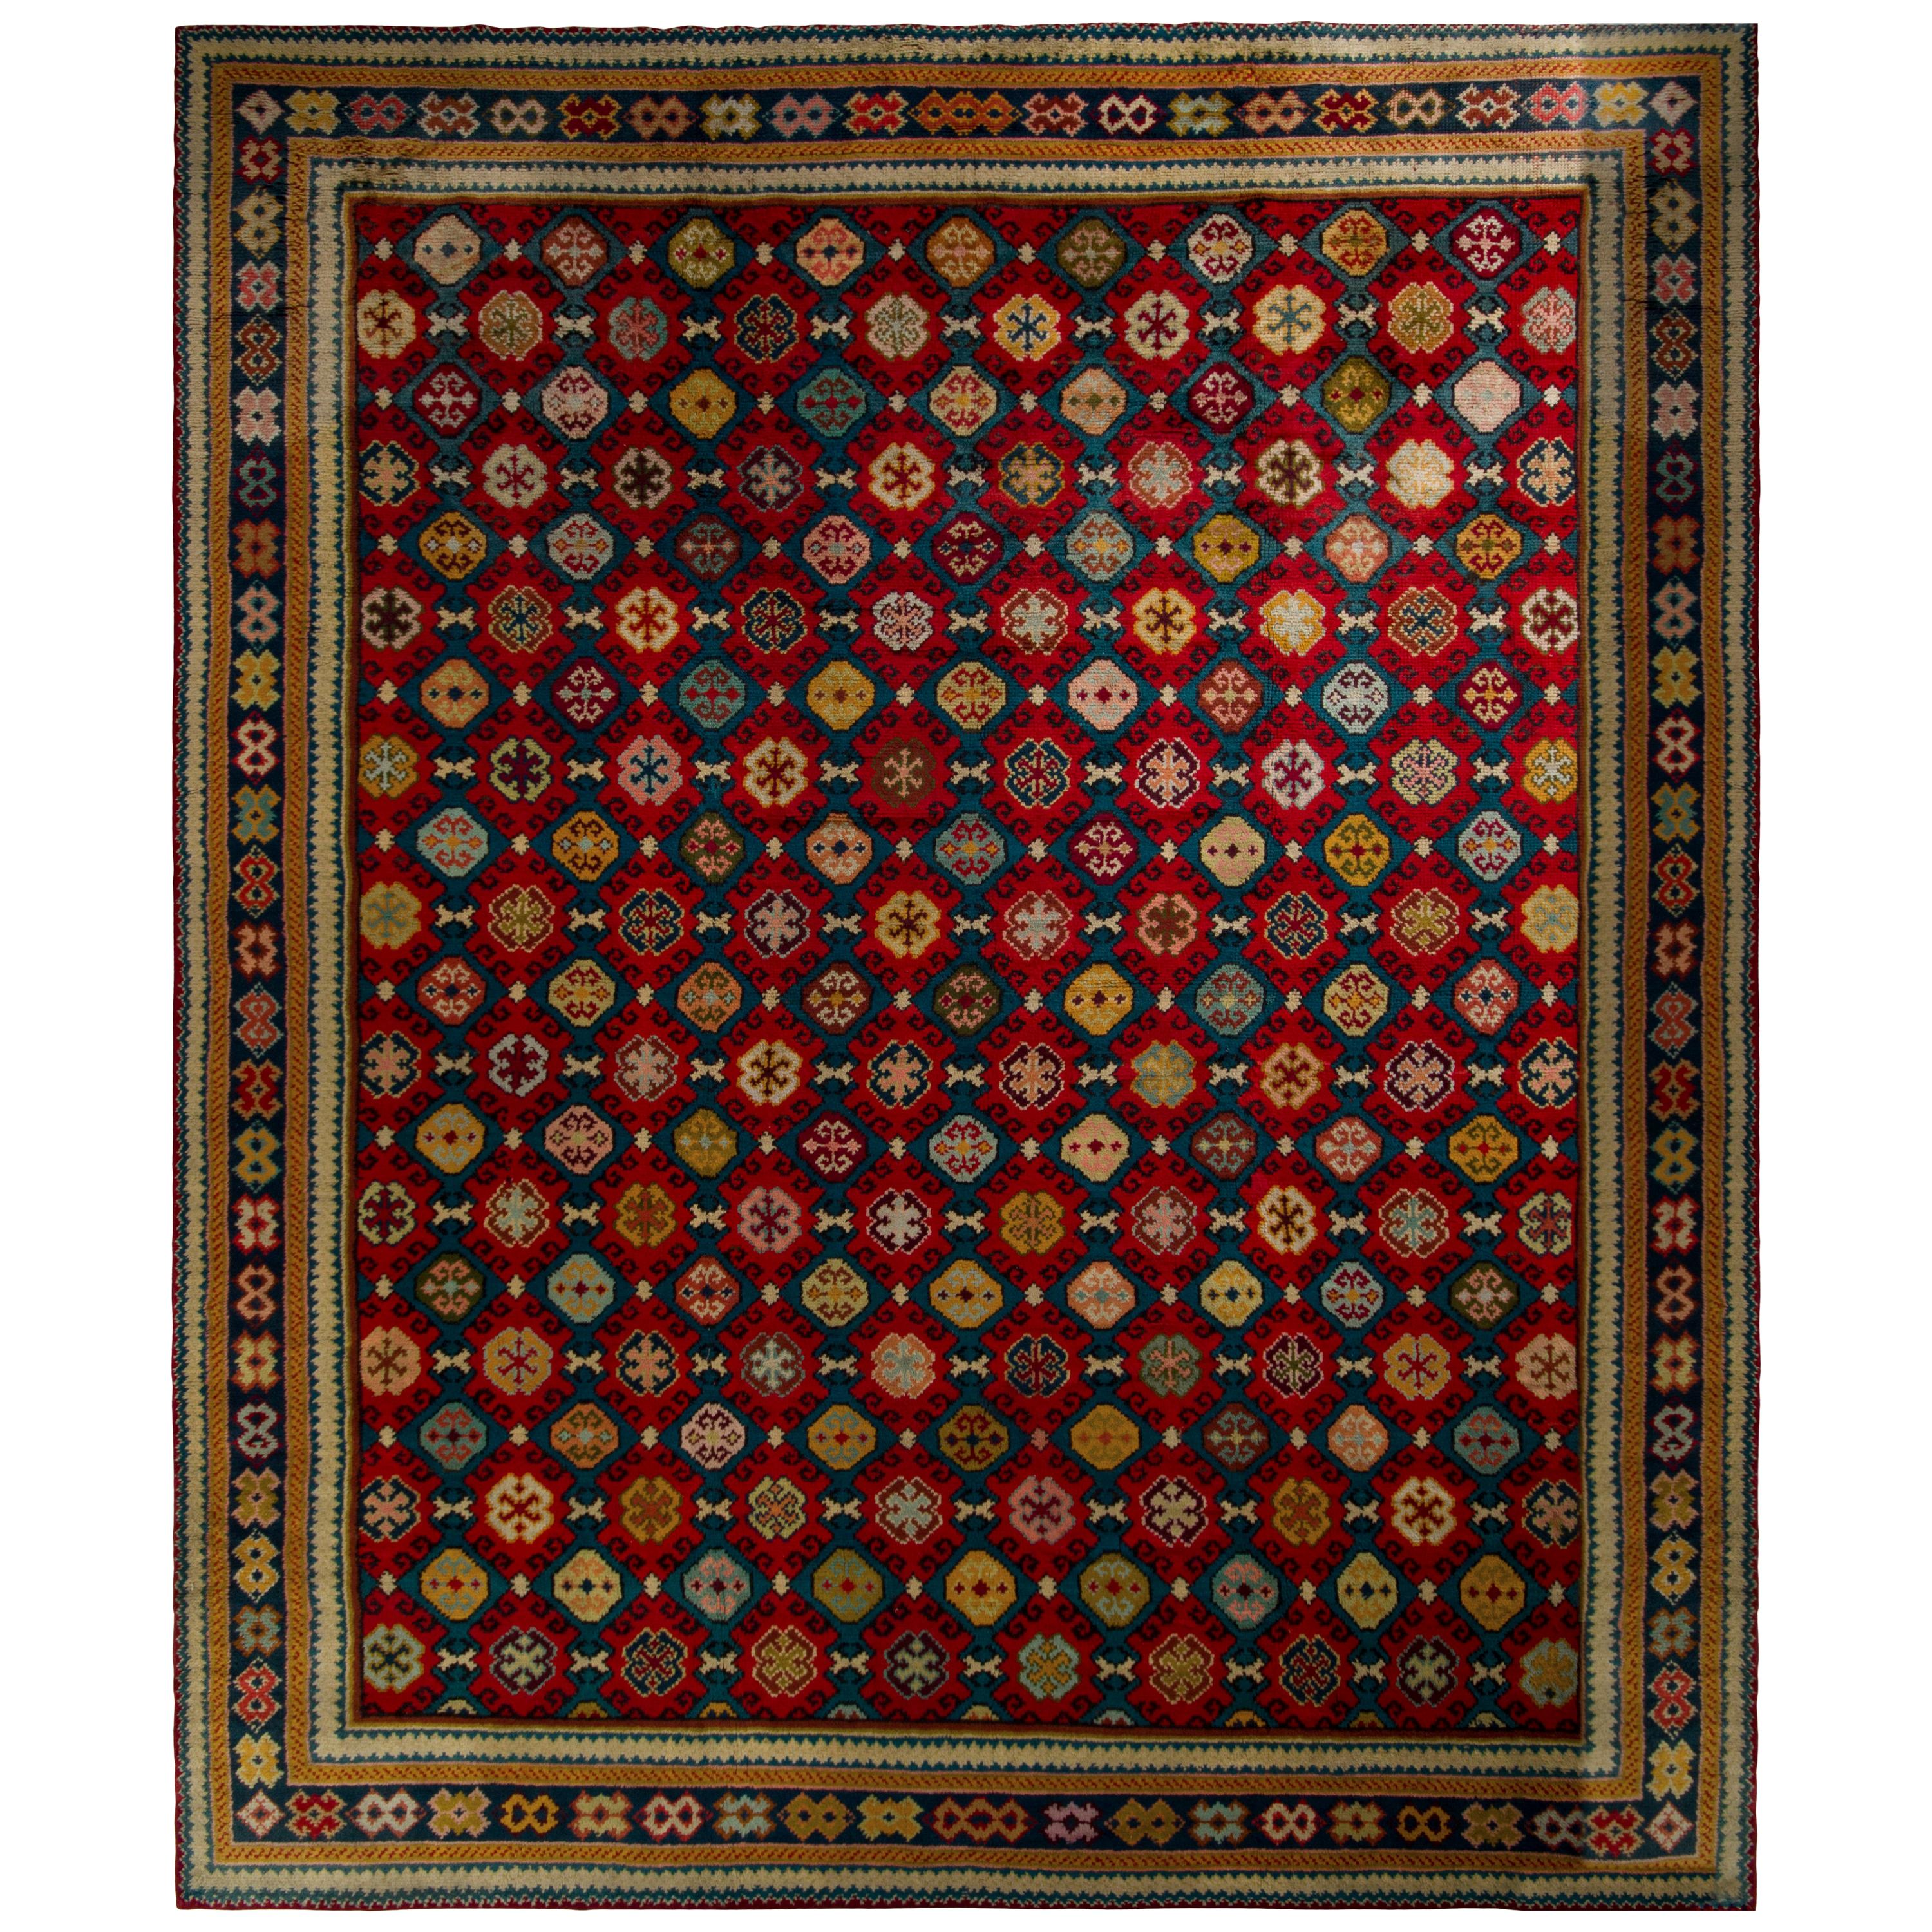 Handgeknüpfter antiker Axminster-Teppich mit rotem geometrischem Muster